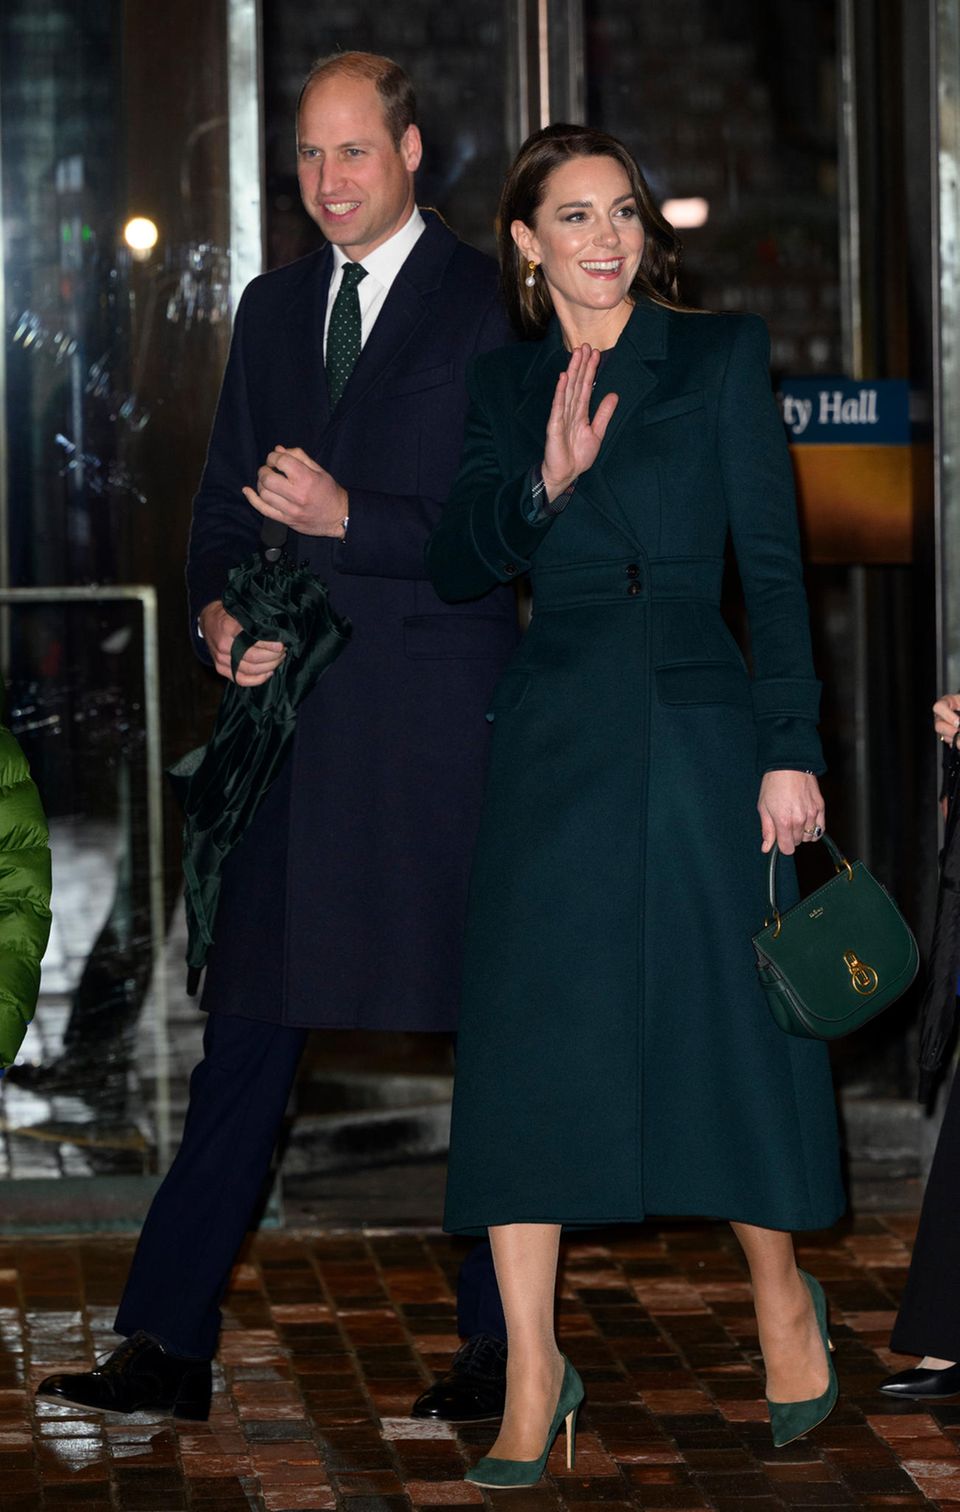 Besser kann man eine Farbe nicht aufgreifen: Damit der Look auch draußen bei etwa zwei Grad celsius elegant bleibt, setzt die Ehefrau von Prinz William auf einen Mantel von Alexander McQueen, der ihr dunkelgrünes Outfit perfekt abrundet.